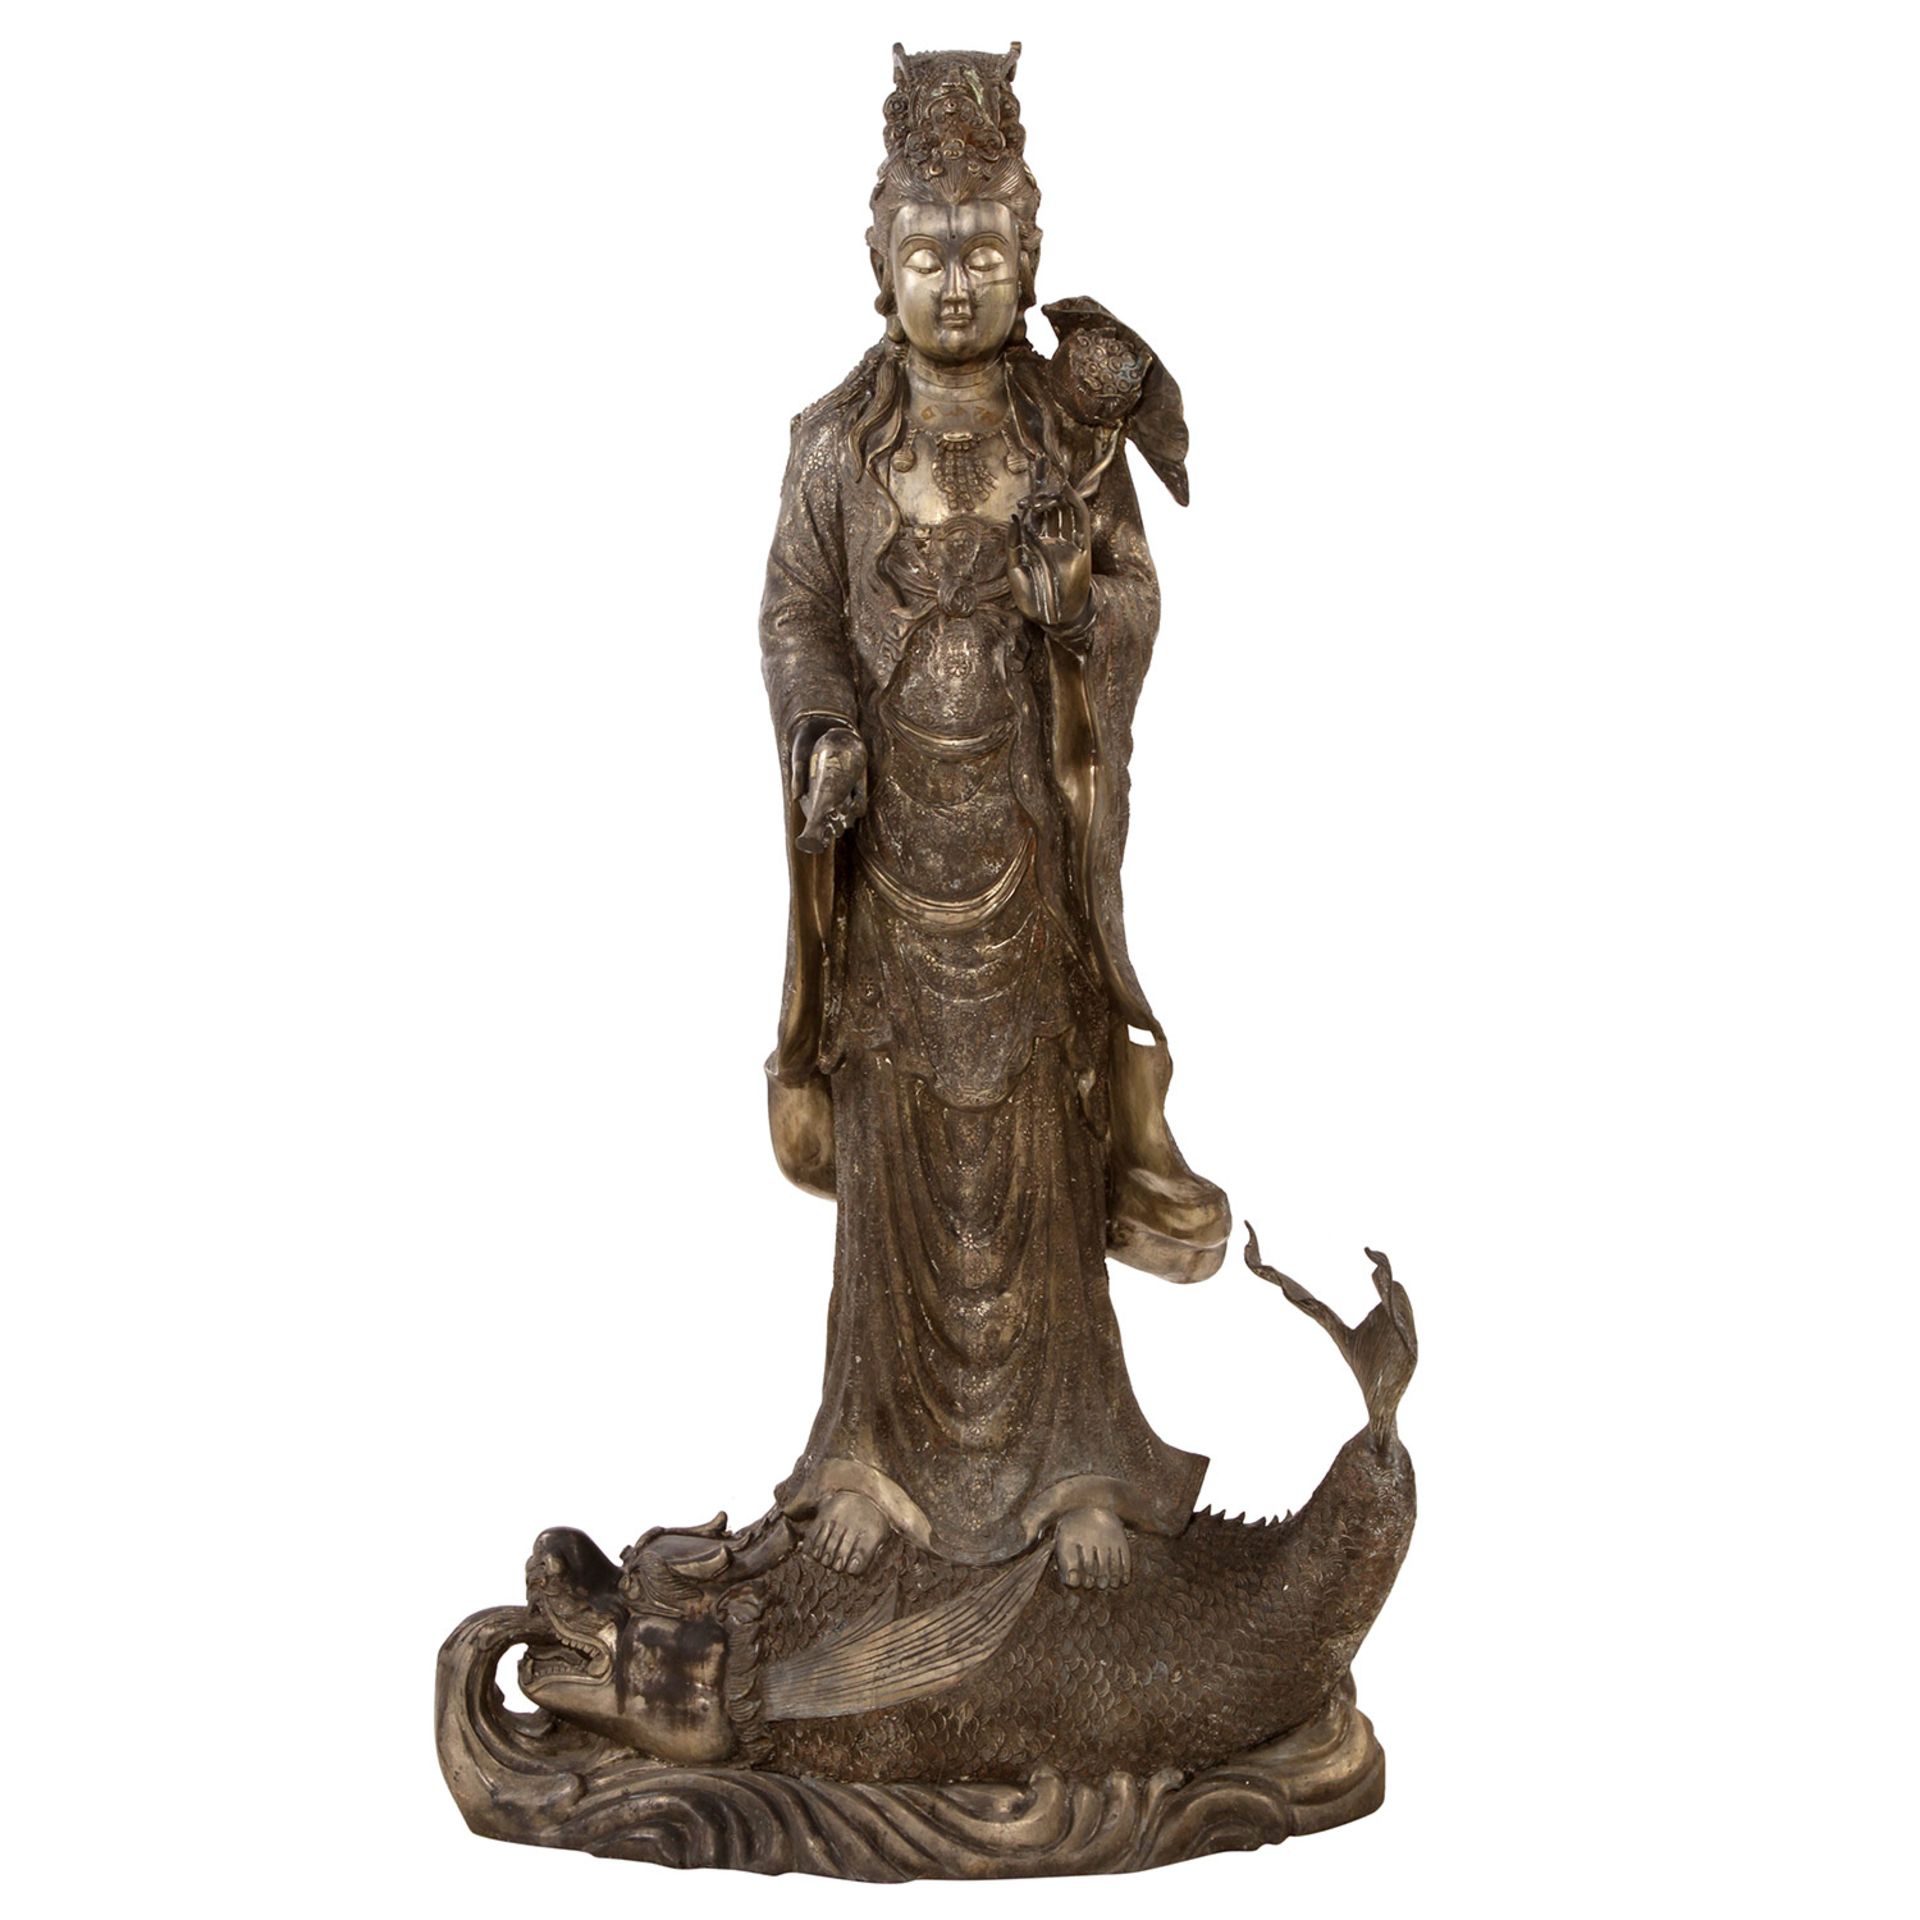 GROßE BRONZESKULPTUR, GÖTTIN GUANYIN 20. Jh., Bronze, Detailreiche Skulptur der Buddhistischen